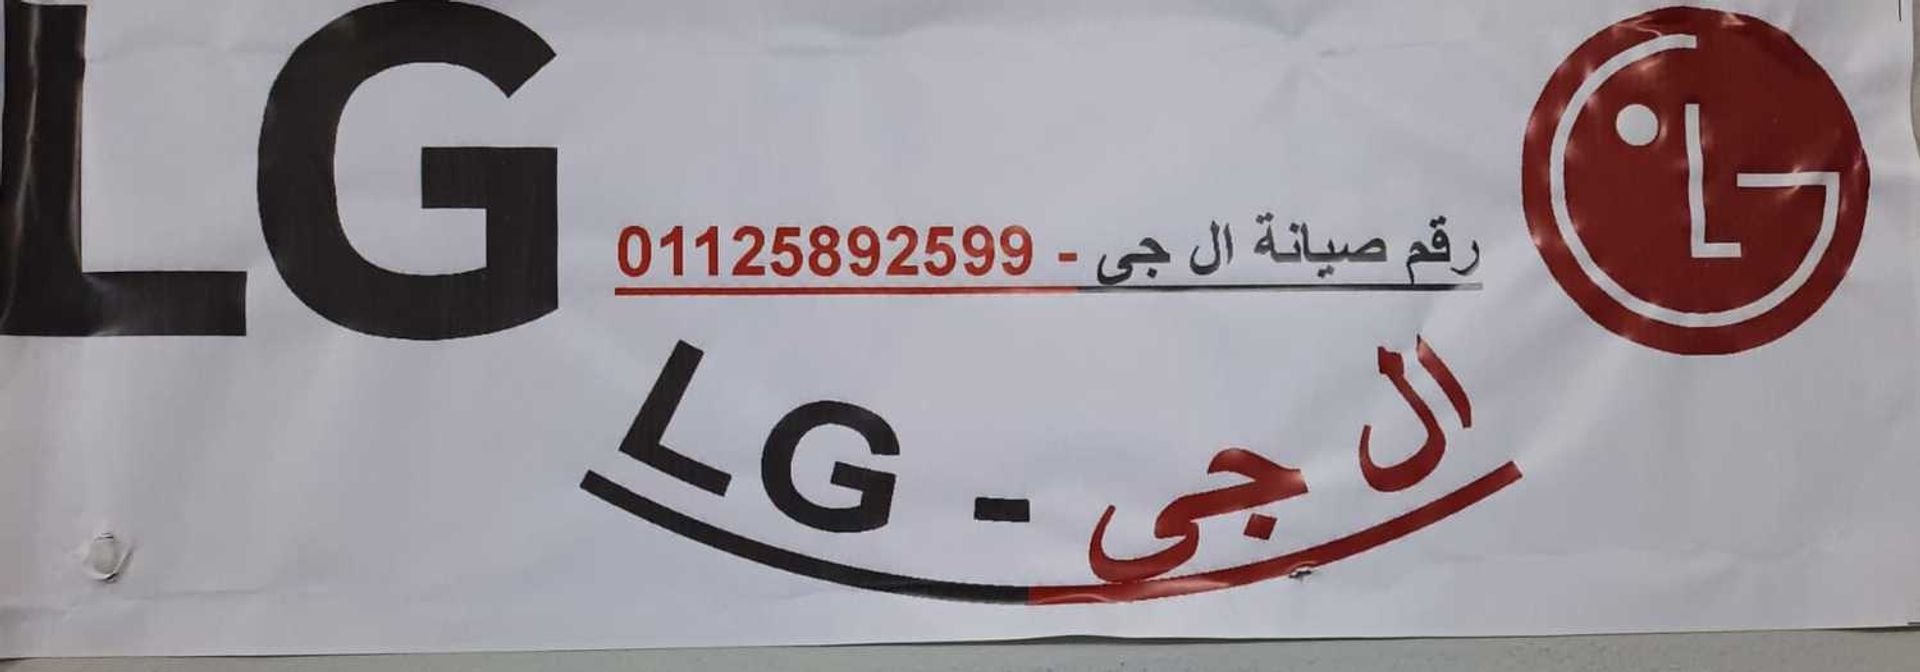 رقم اعطال ثلاجات LG كفر الزيات 01092279973